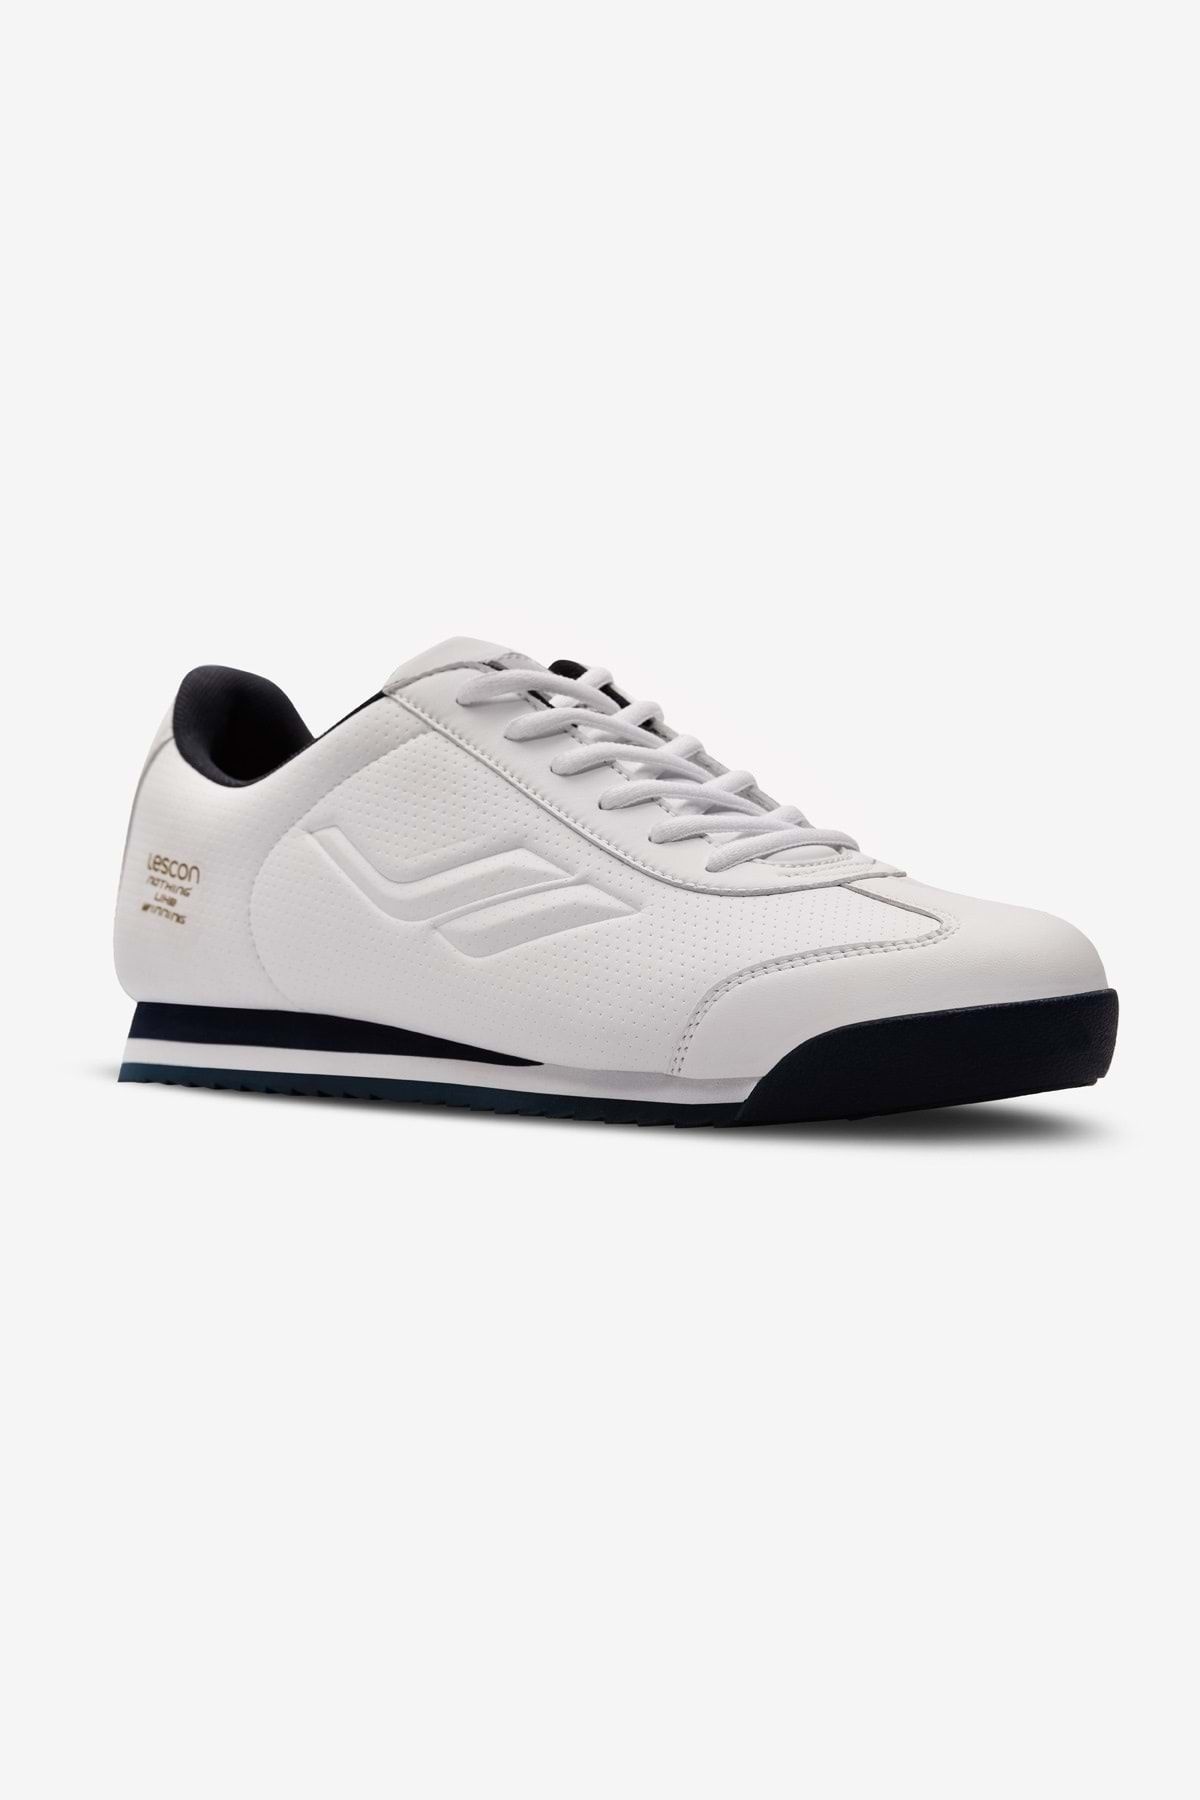 Lescon Winner7 0718 Sneakers Spor Ayakkabı - Btmk00718-beyaz-44